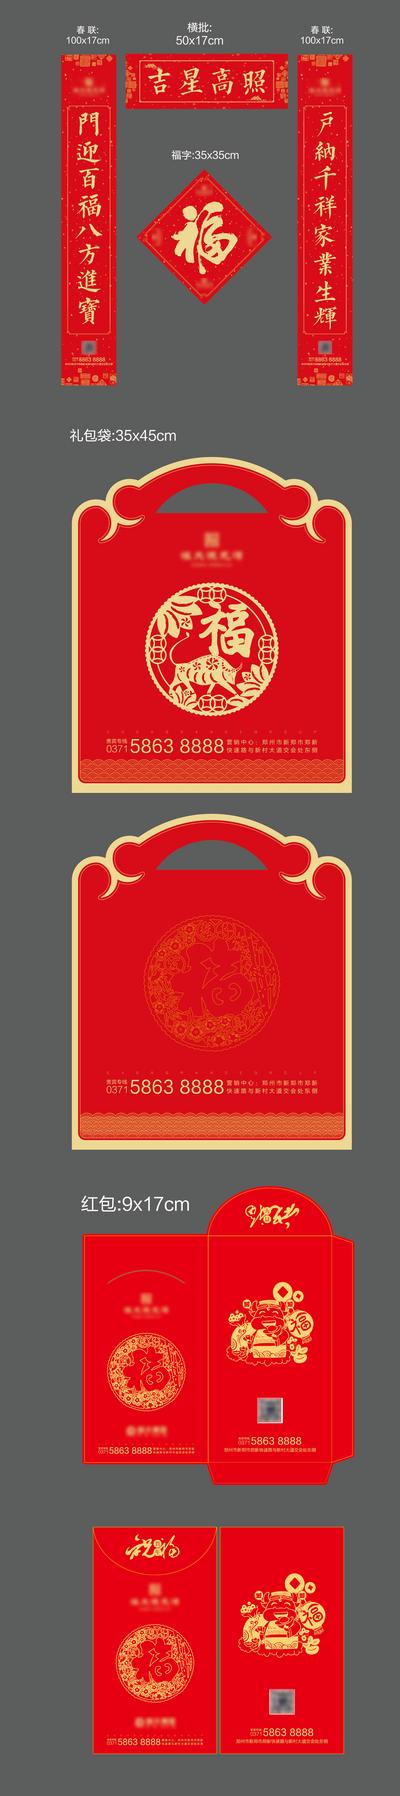 南门网 春联 对联 房地产 中国传统节日 春节 福字 红包 福袋